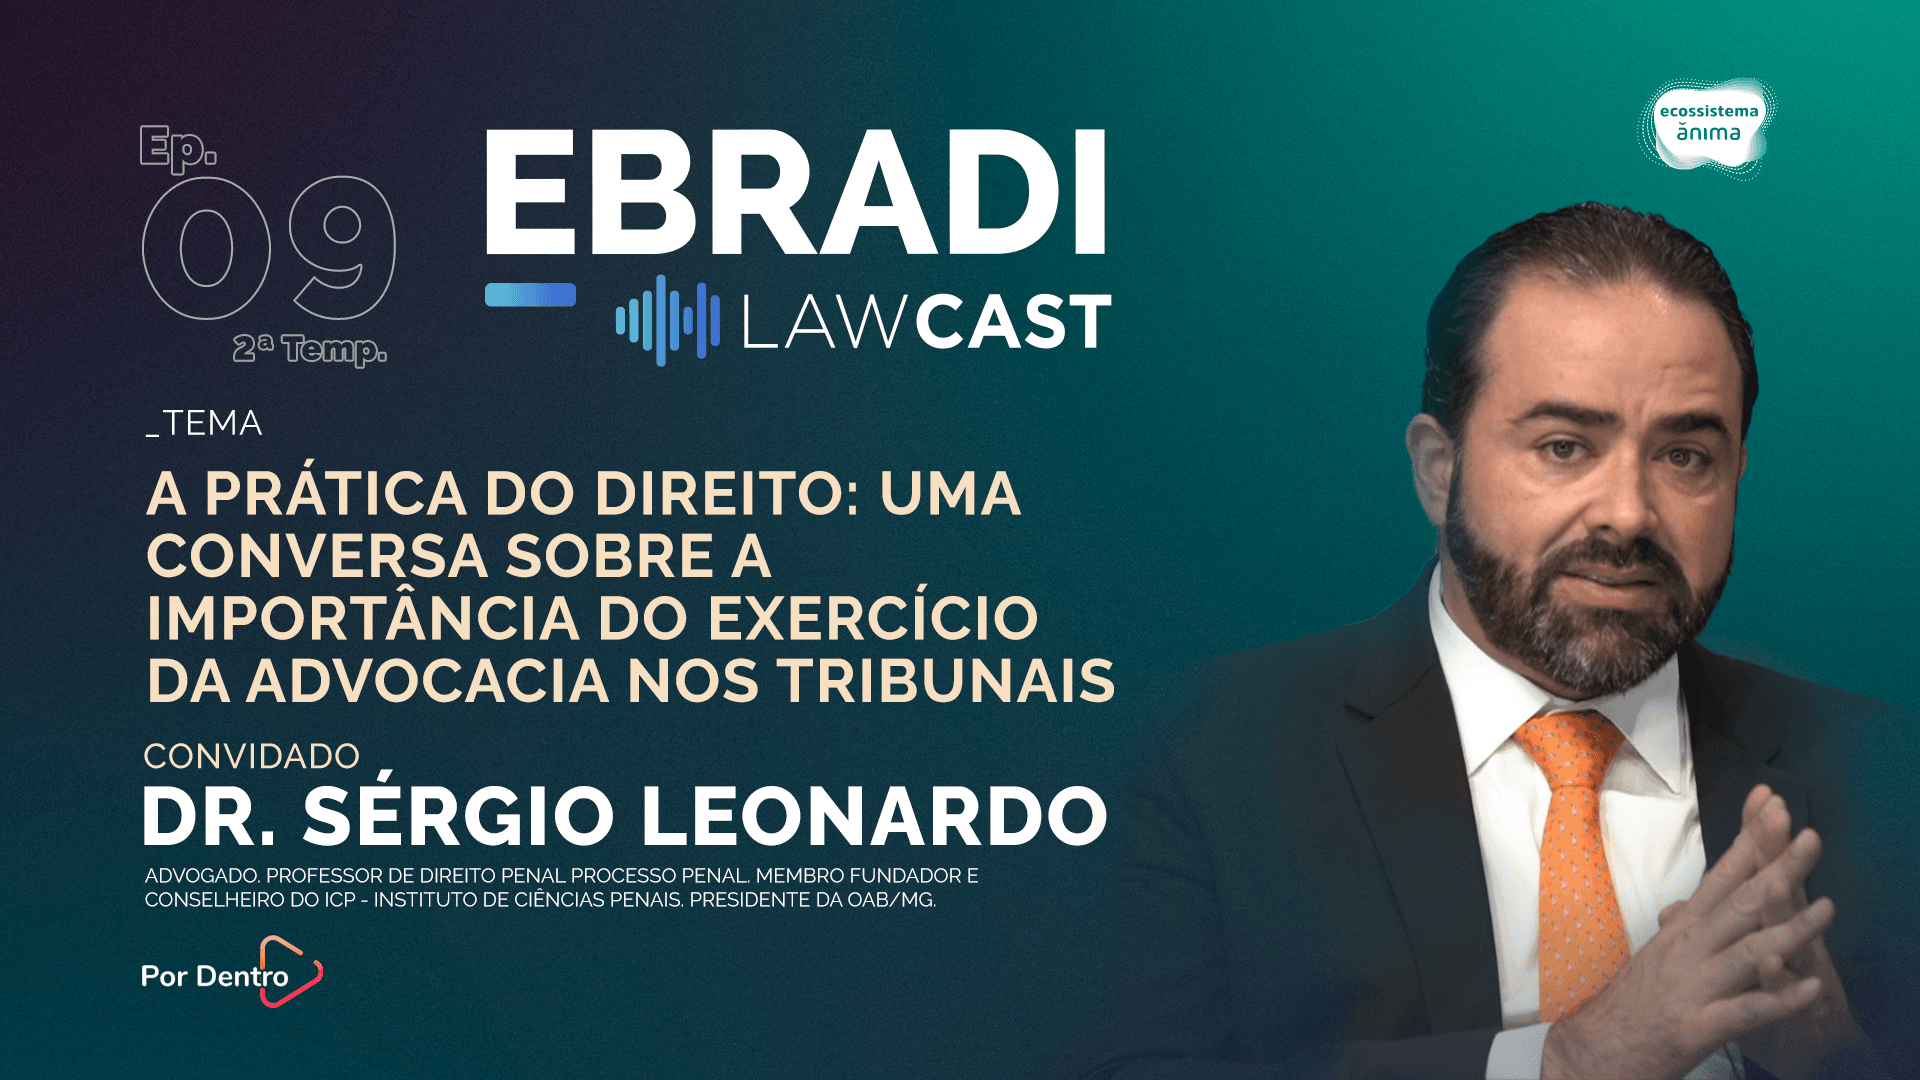 LawCast entrevista Dr. Sergio Leonardo: Tripartição de Poderes